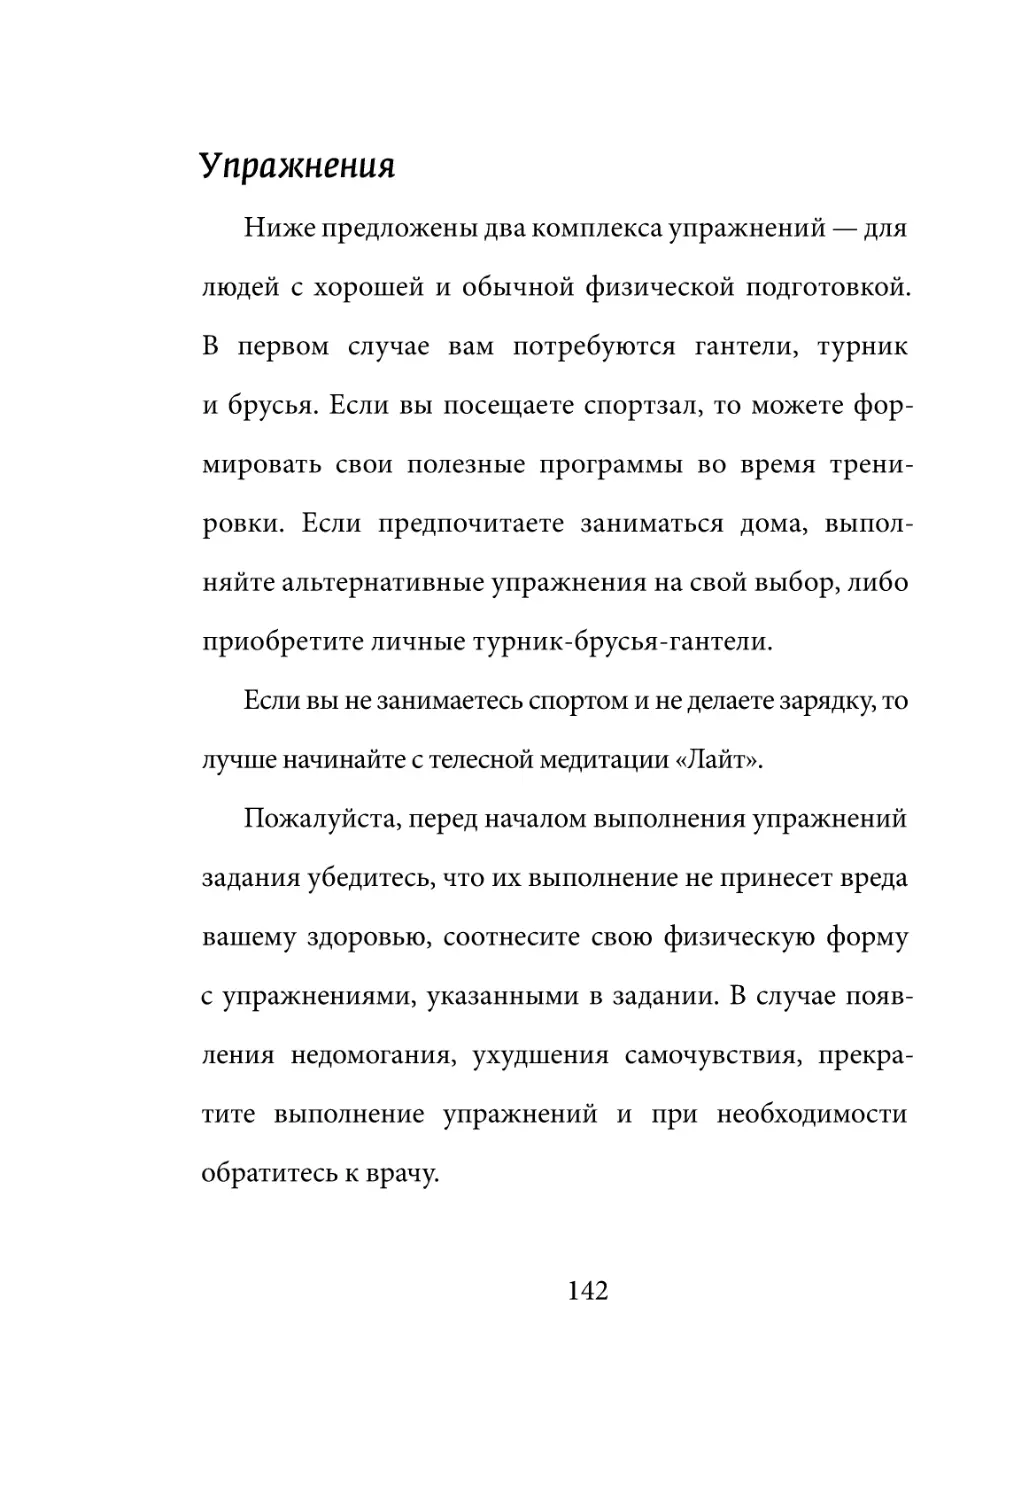 Sergey_Filippov_Dnevnik_samorazvitia_Evolyutsia_Vnutrennego_Sostoyania_142.pdf (p.142)